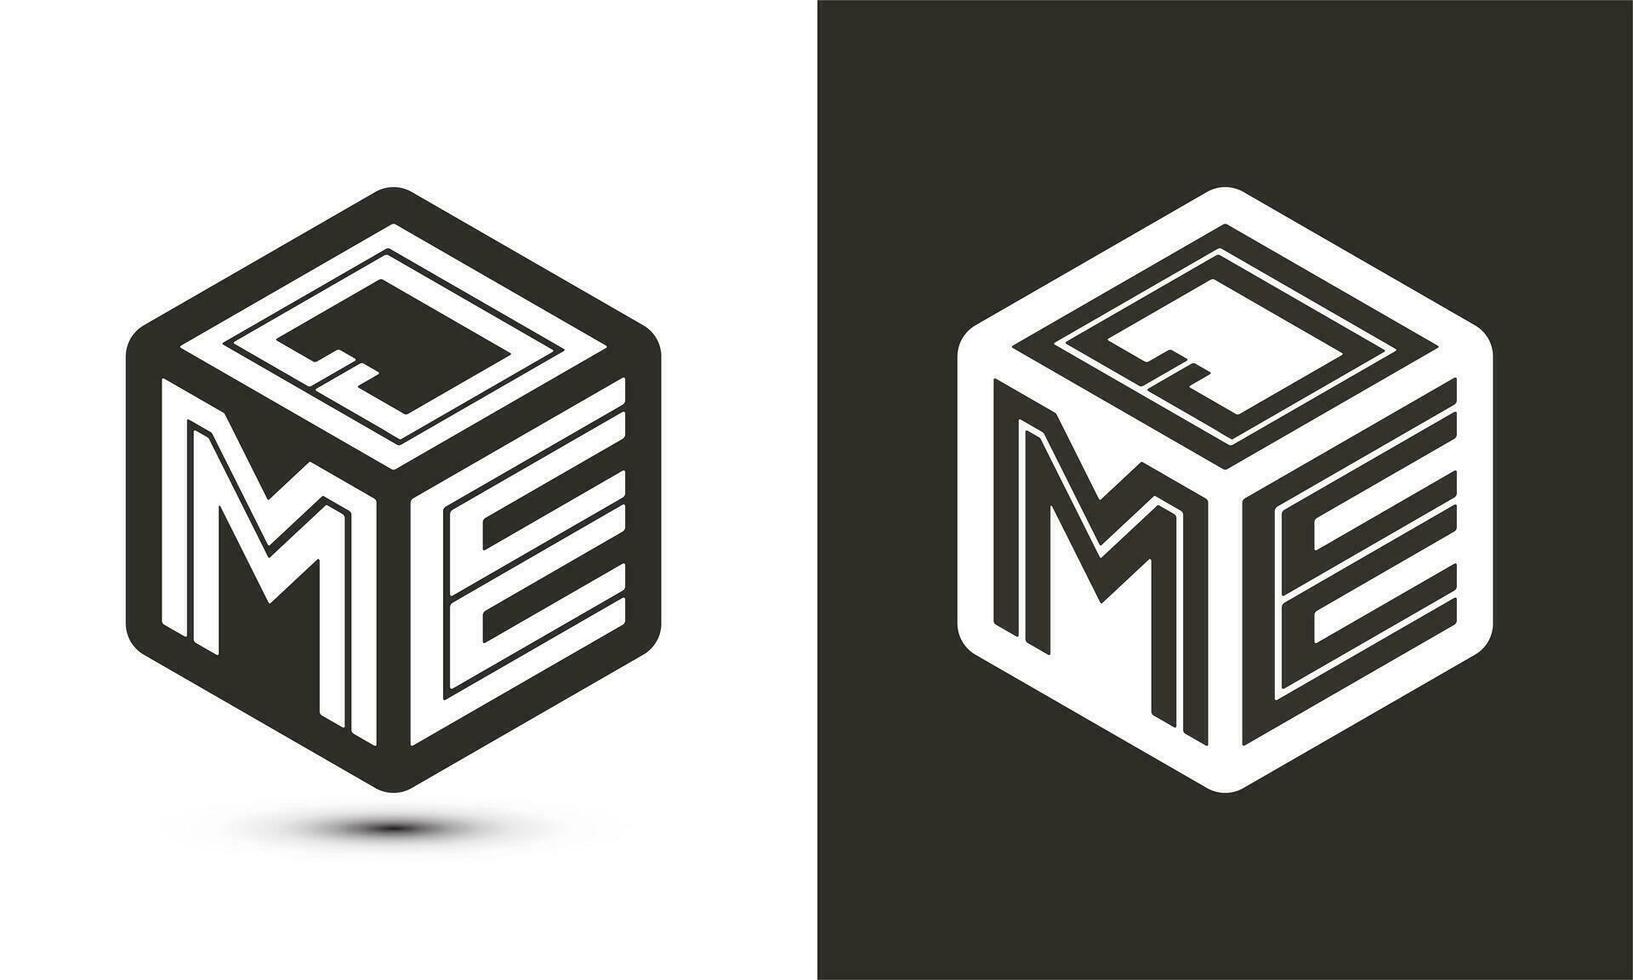 QME letter logo design with illustrator cube logo, vector logo modern alphabet font overlap style.